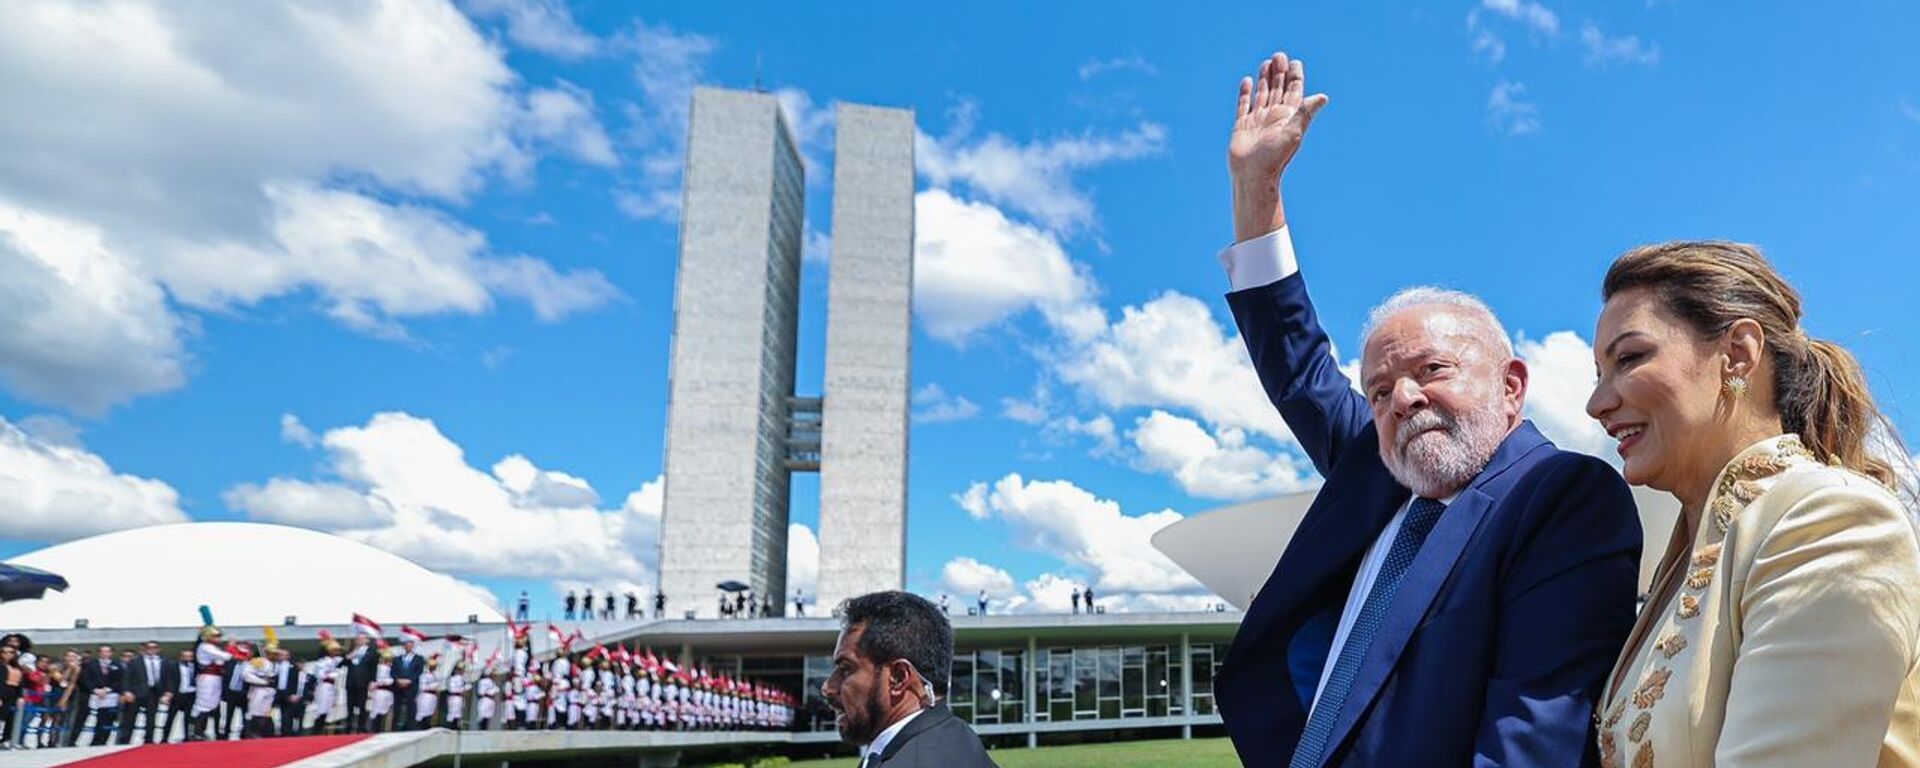 O presidente Luiz Inácio Lula da Silva (PT) acena para apoiadores em frente à rampa do Palácio do Planalto, em Brasília (DF), durante cerimônia de posse, no dia 1º de janeiro de 2023 (foto de arquivo) - Sputnik Brasil, 1920, 02.01.2023